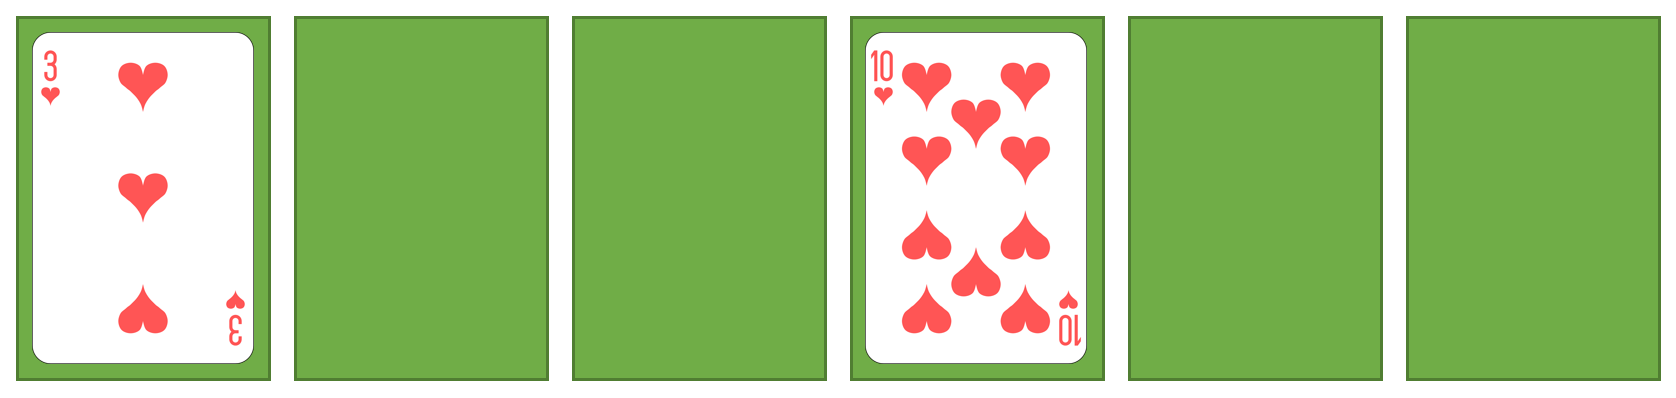 spielkarten-sort4-2